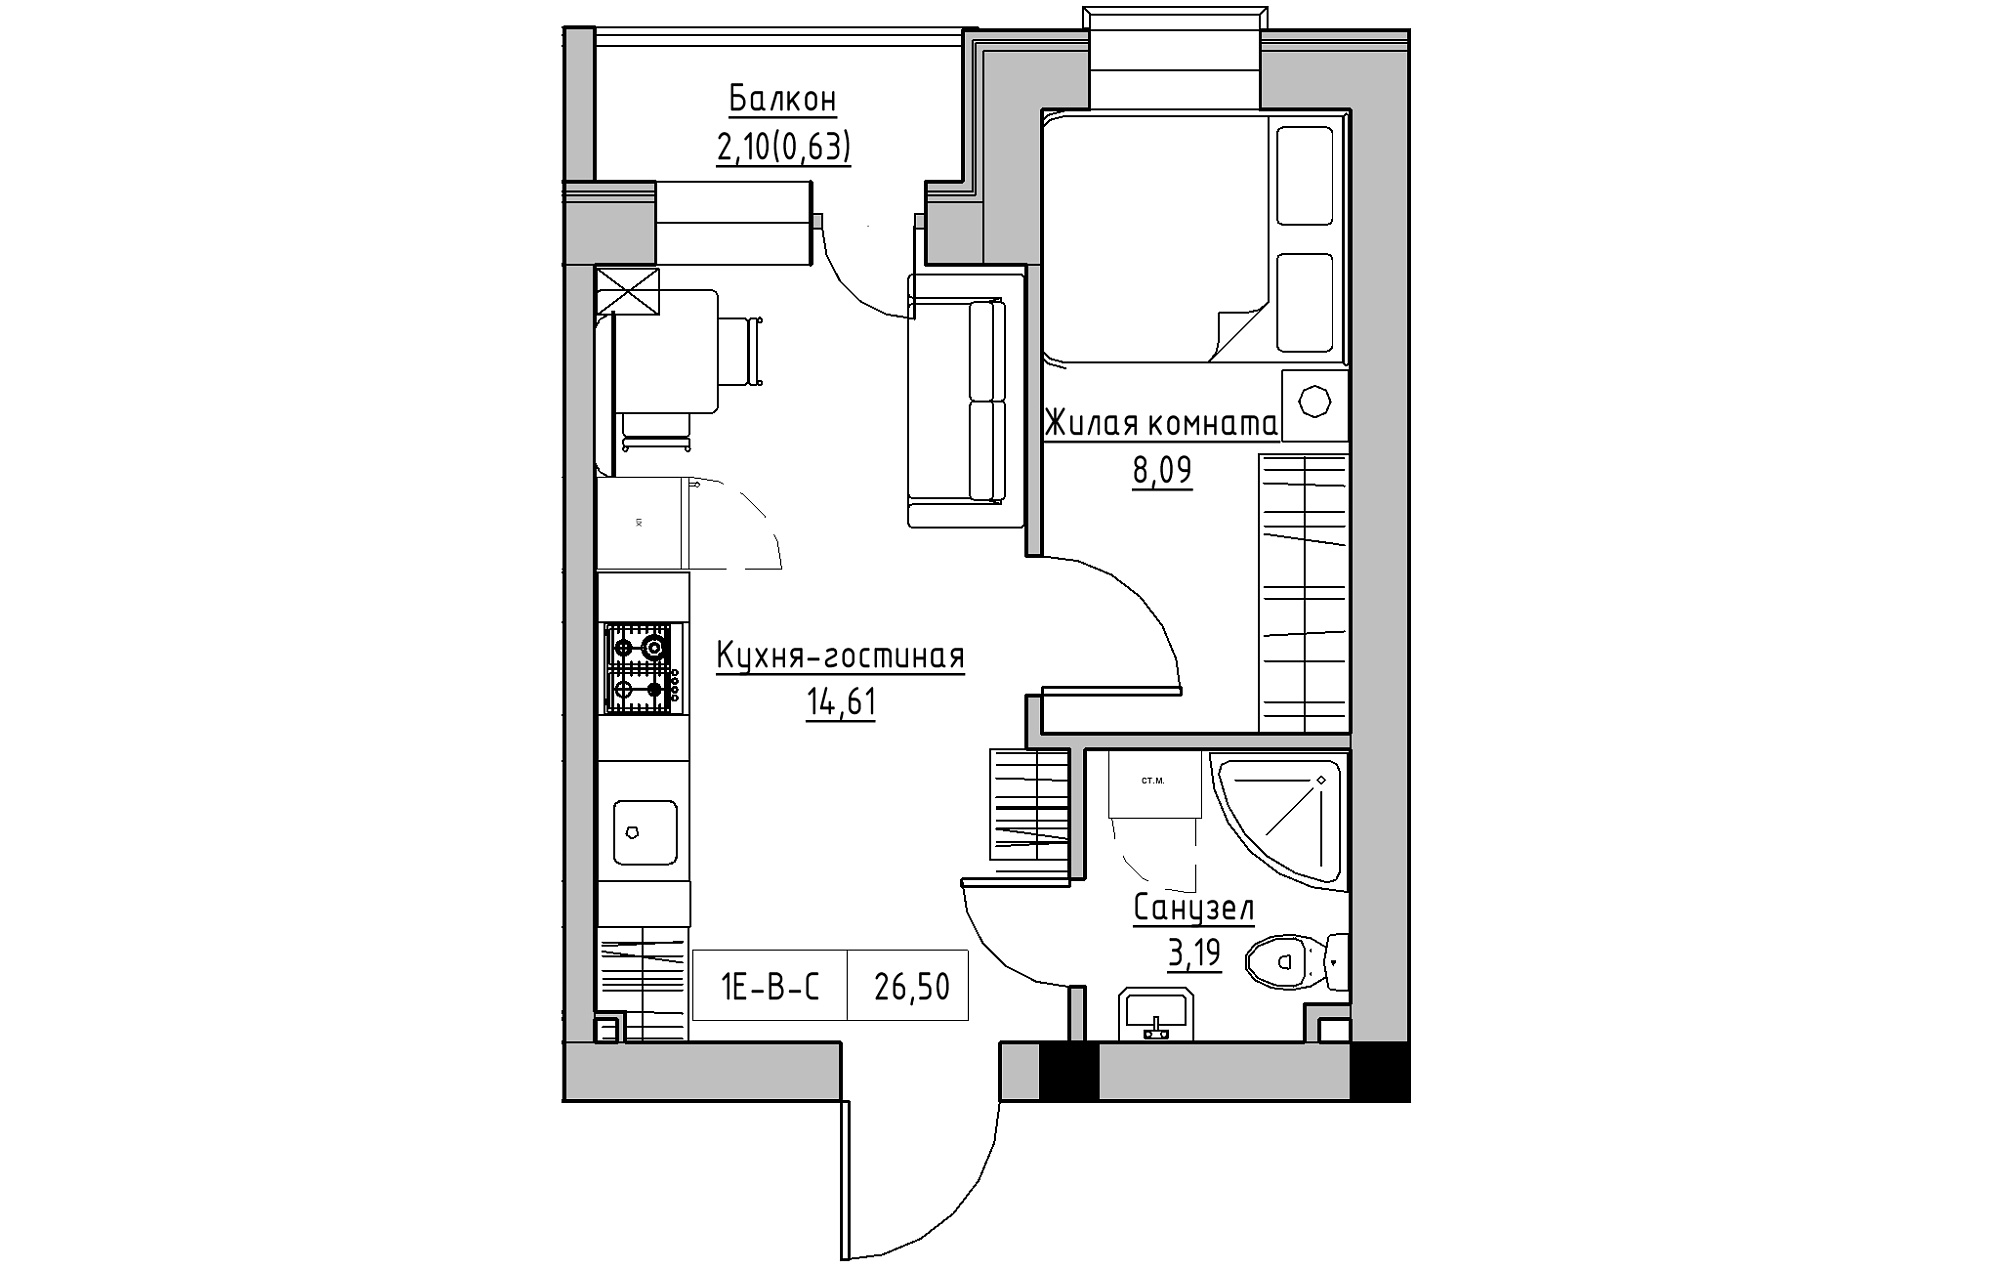 Планировка 1-к квартира площей 26.5м2, KS-018-05/0008.